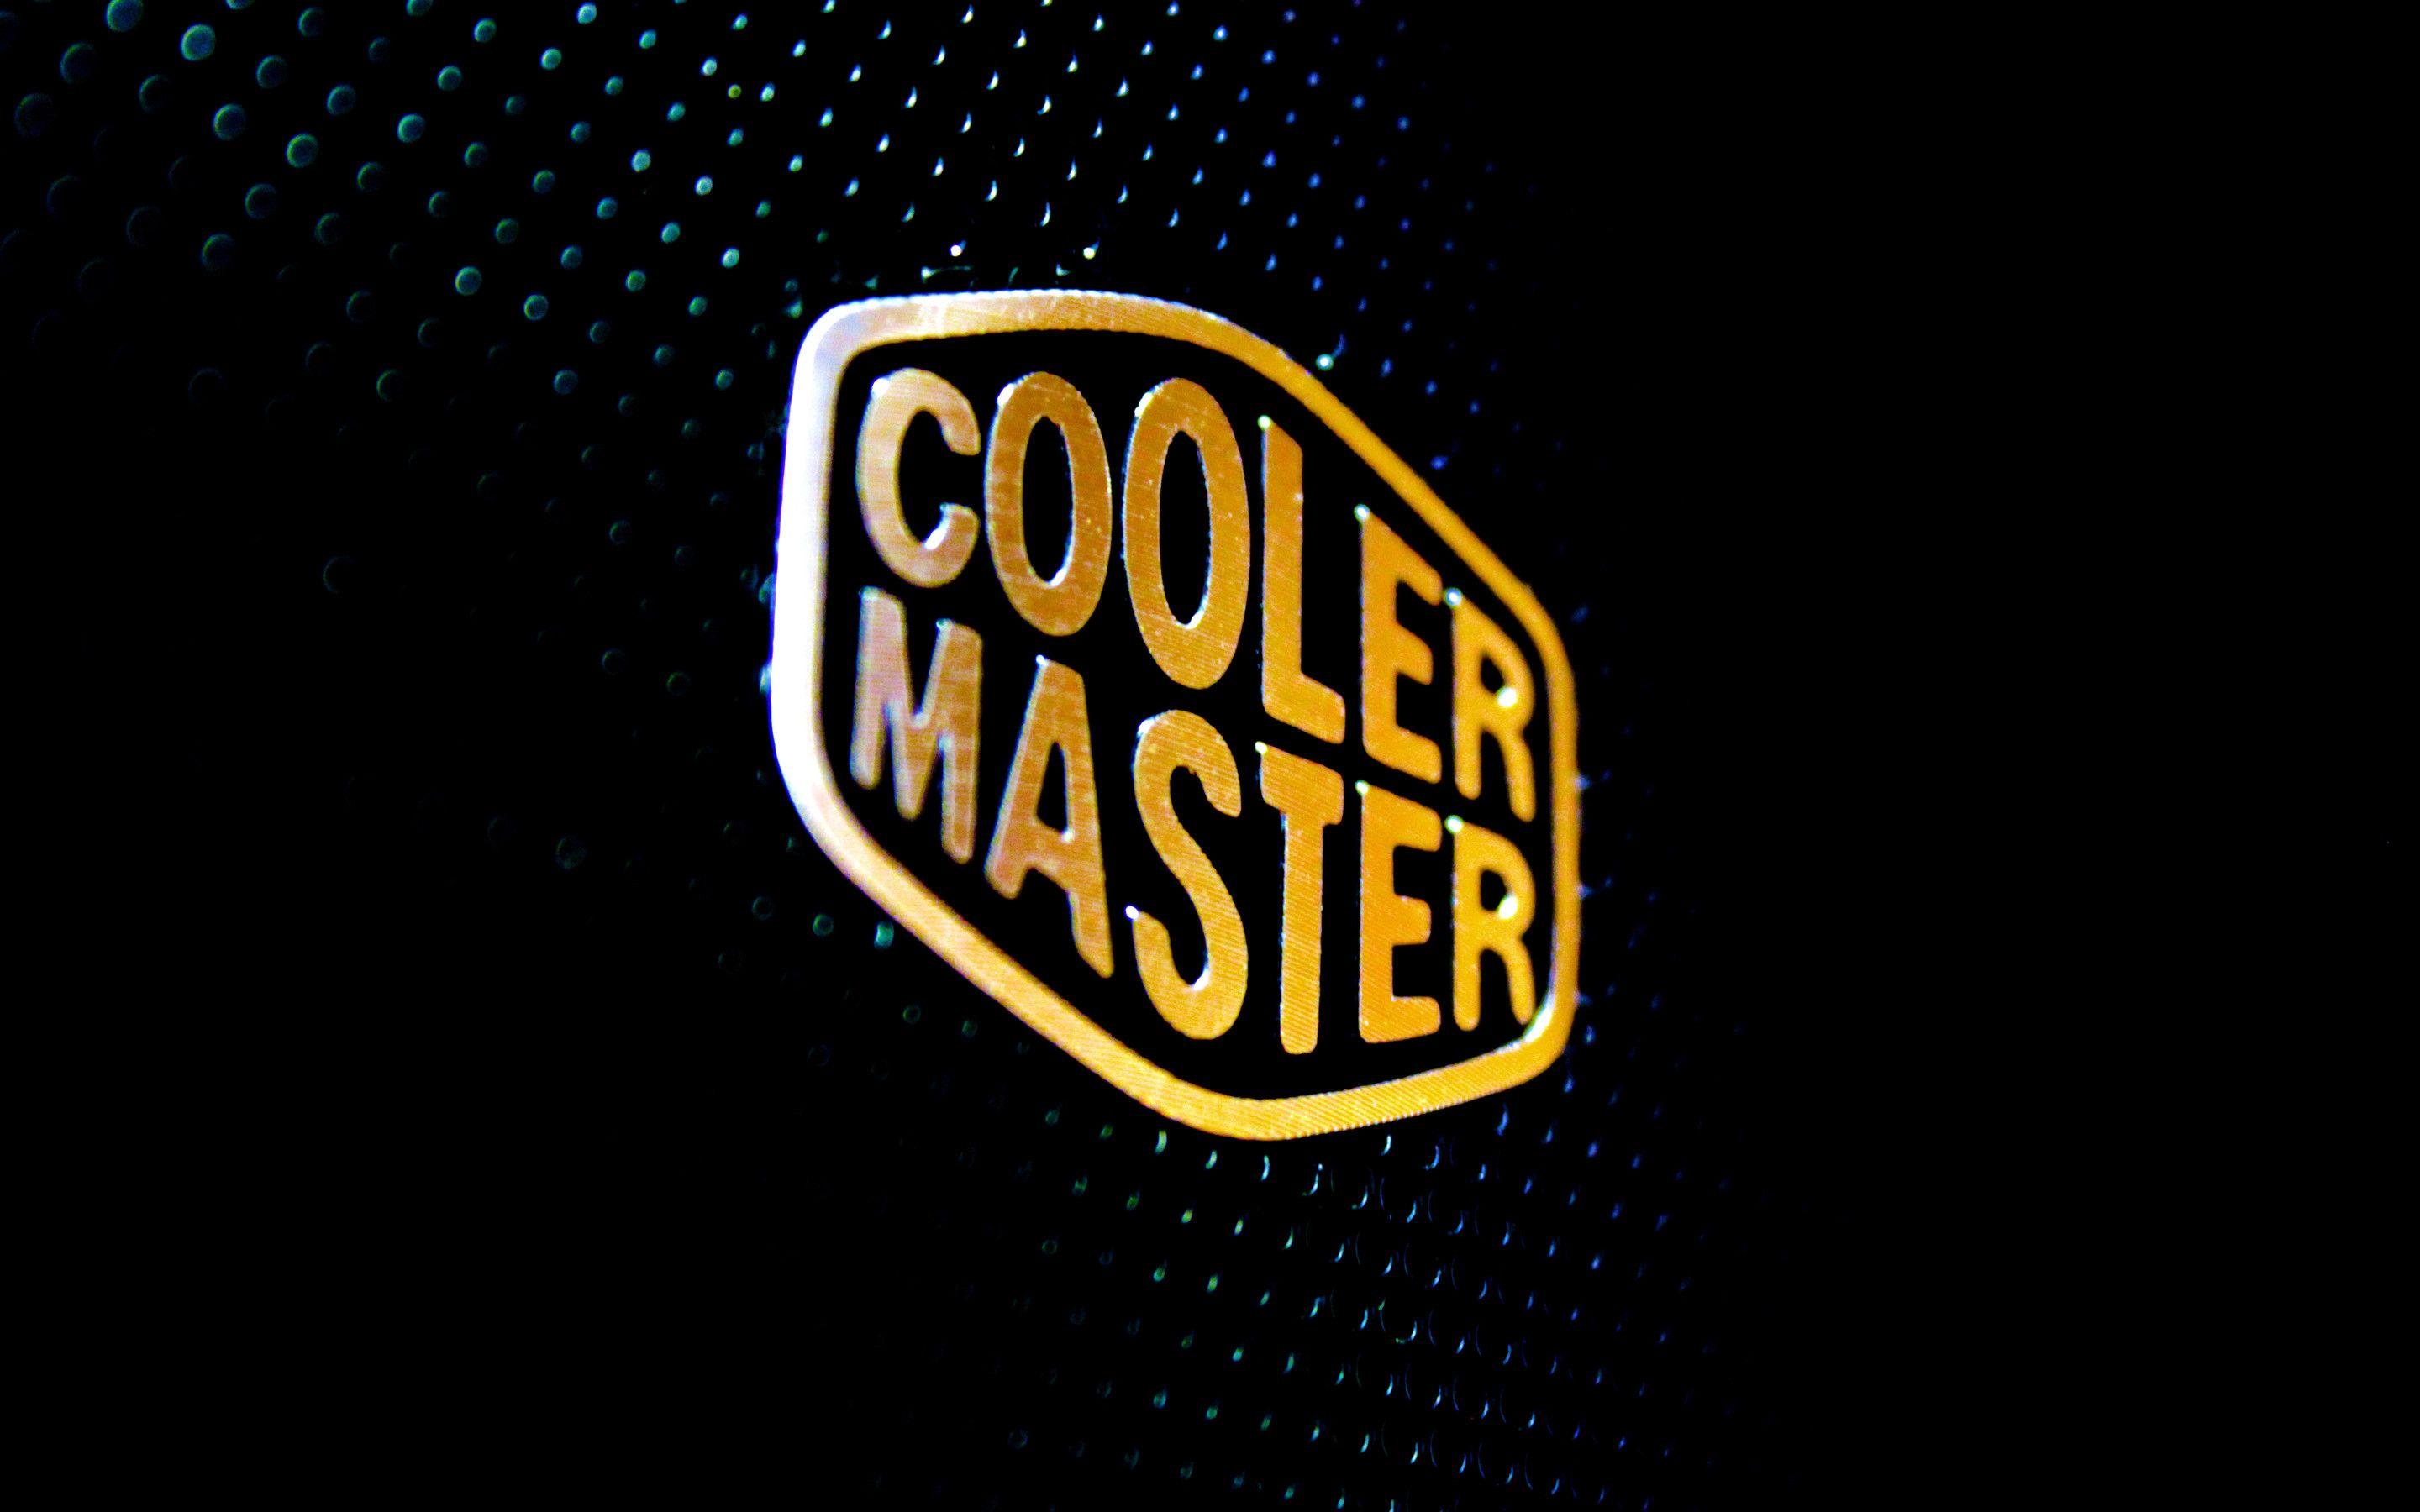 Cooler Master Wallpaper Free Cooler Master